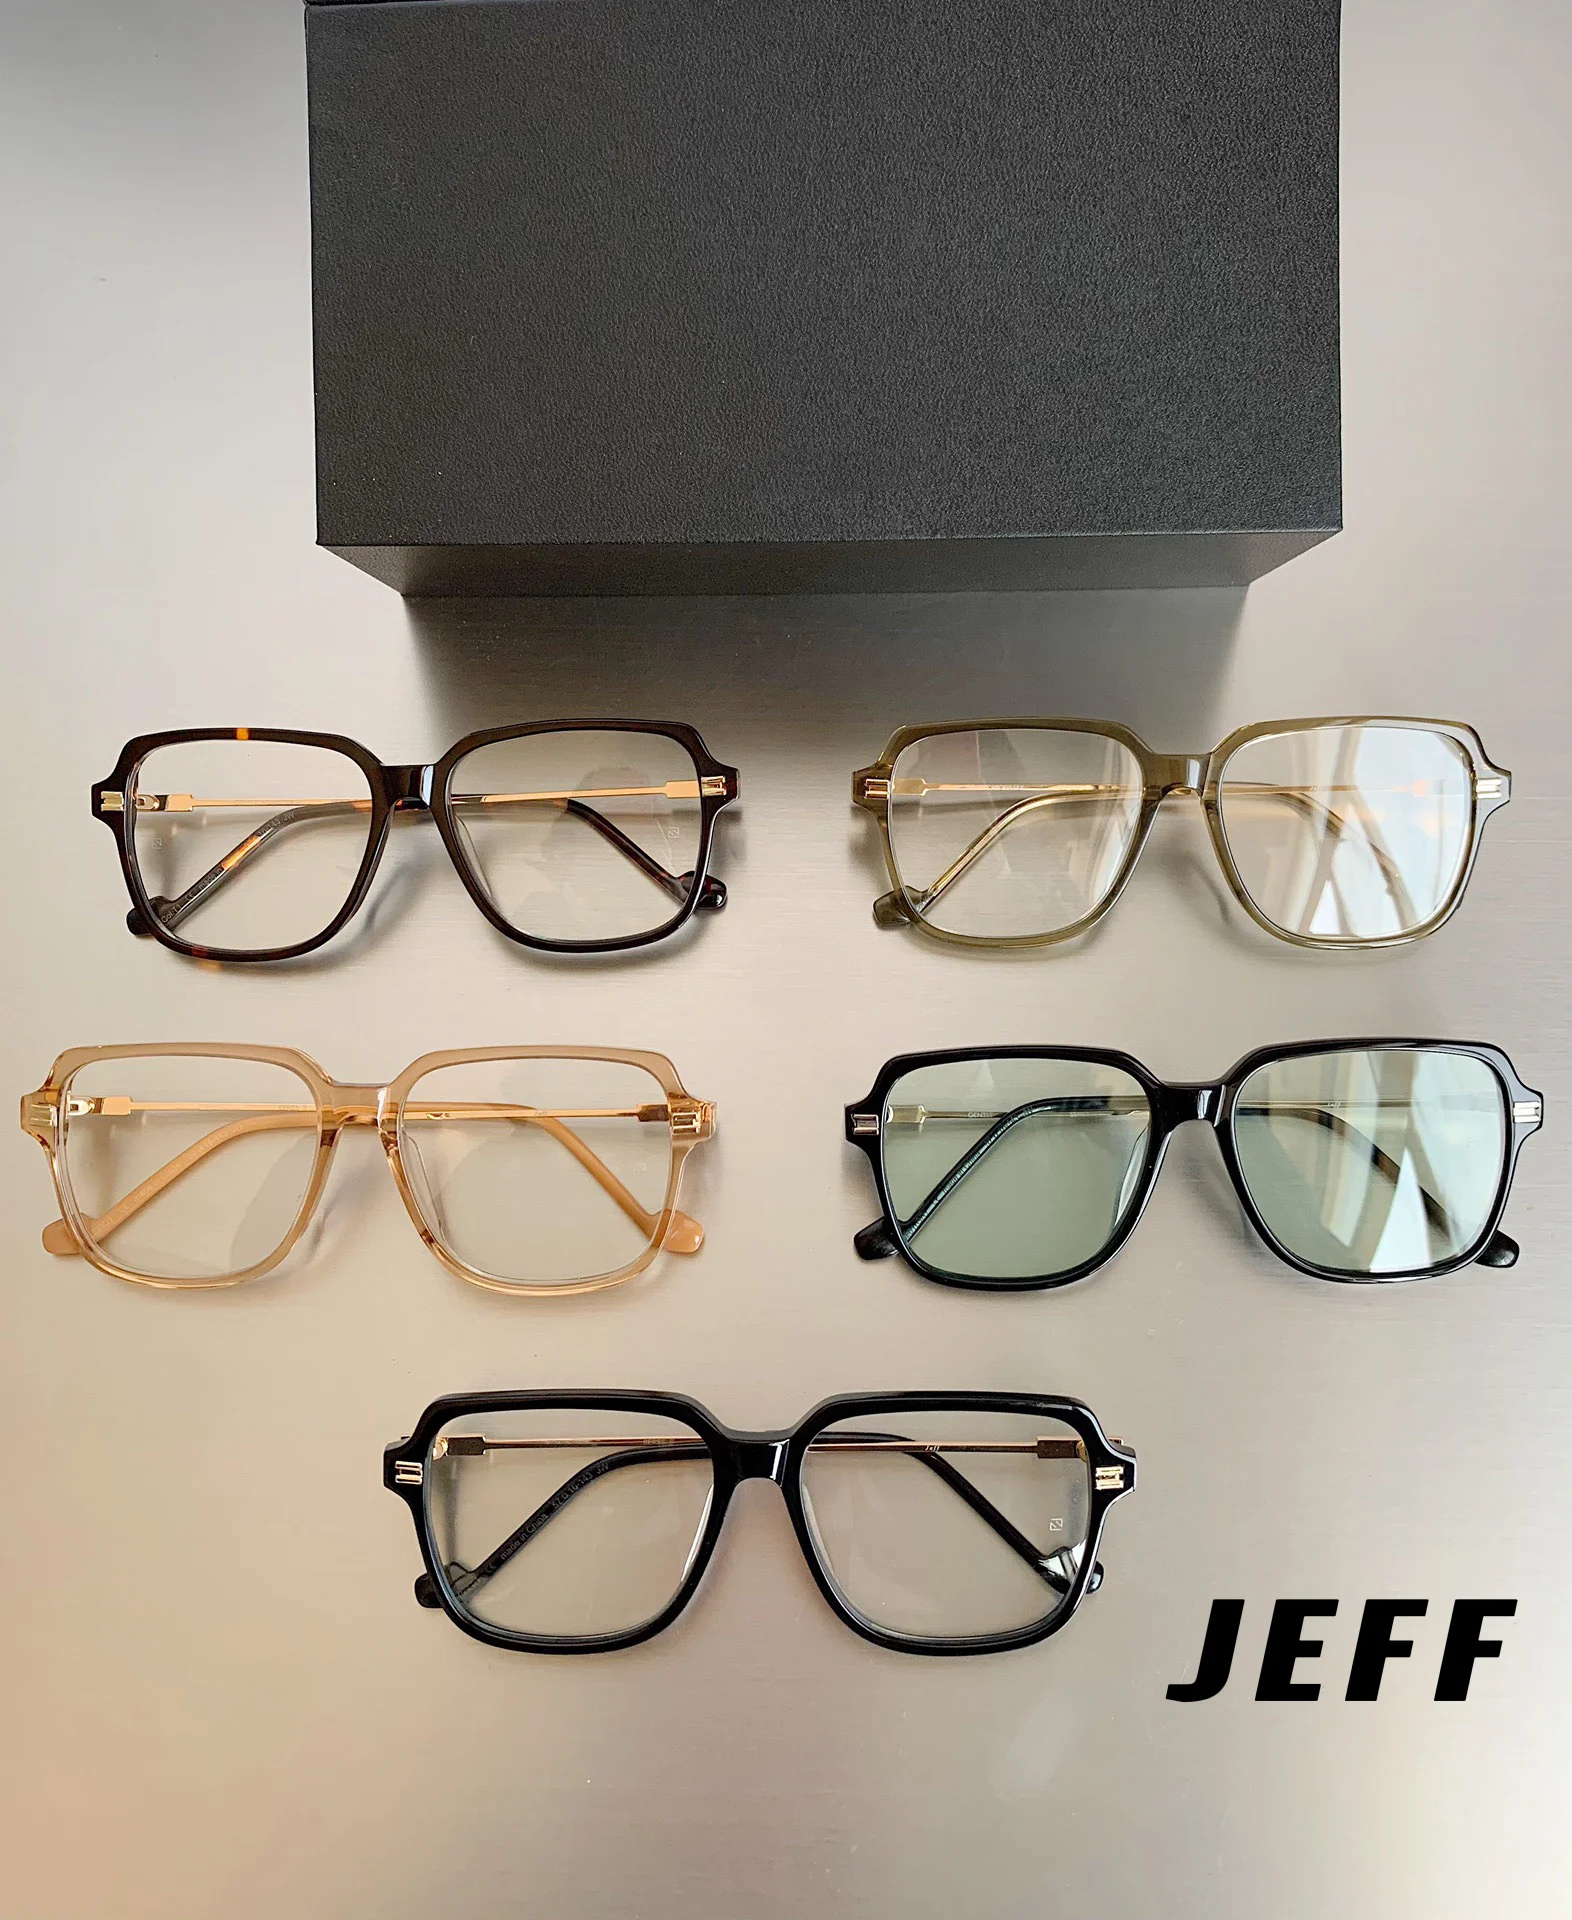 

2022 New GENTLE MONSTER JEFF Sunglasses Korea Brand Design GM Women Men Prescription Glasses UV400 Protection